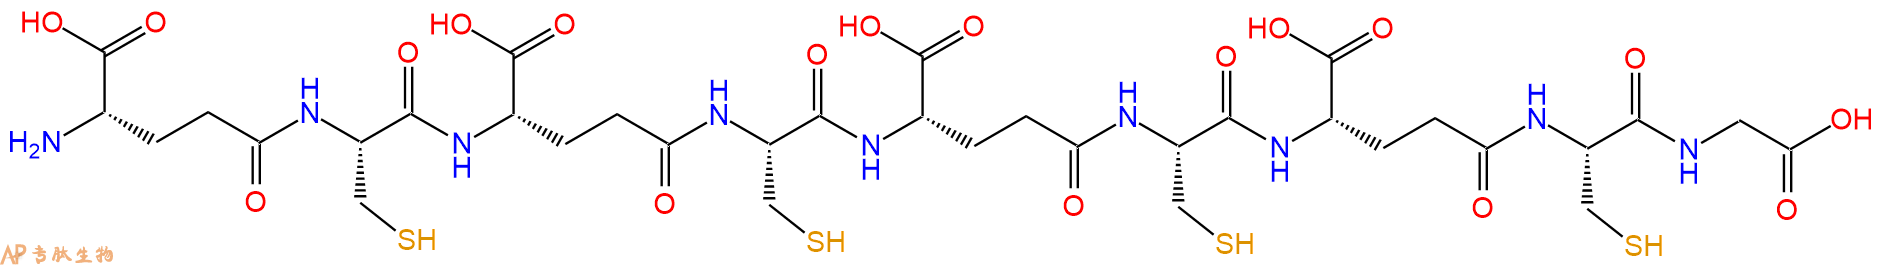 专肽生物产品γGlu-Cys-γGlu-Cys-γGlu-Cys-γGlu-Cys-Gly